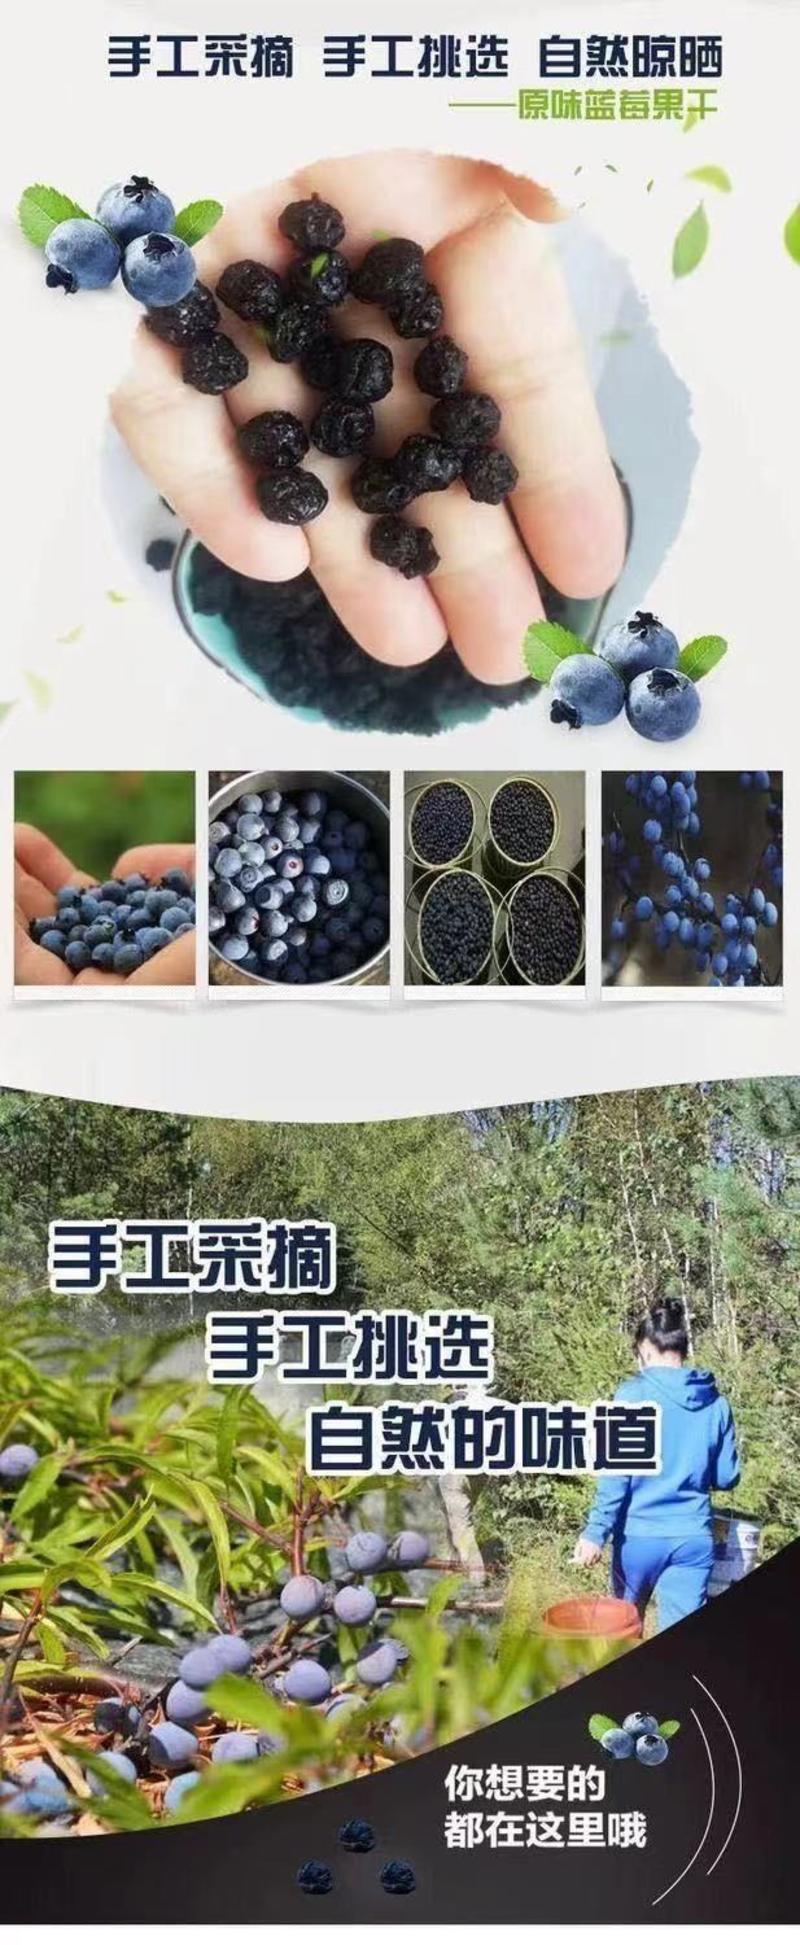 【大颗粒】野生蓝莓干独立小包装食品批发东北特产老少皆宜零